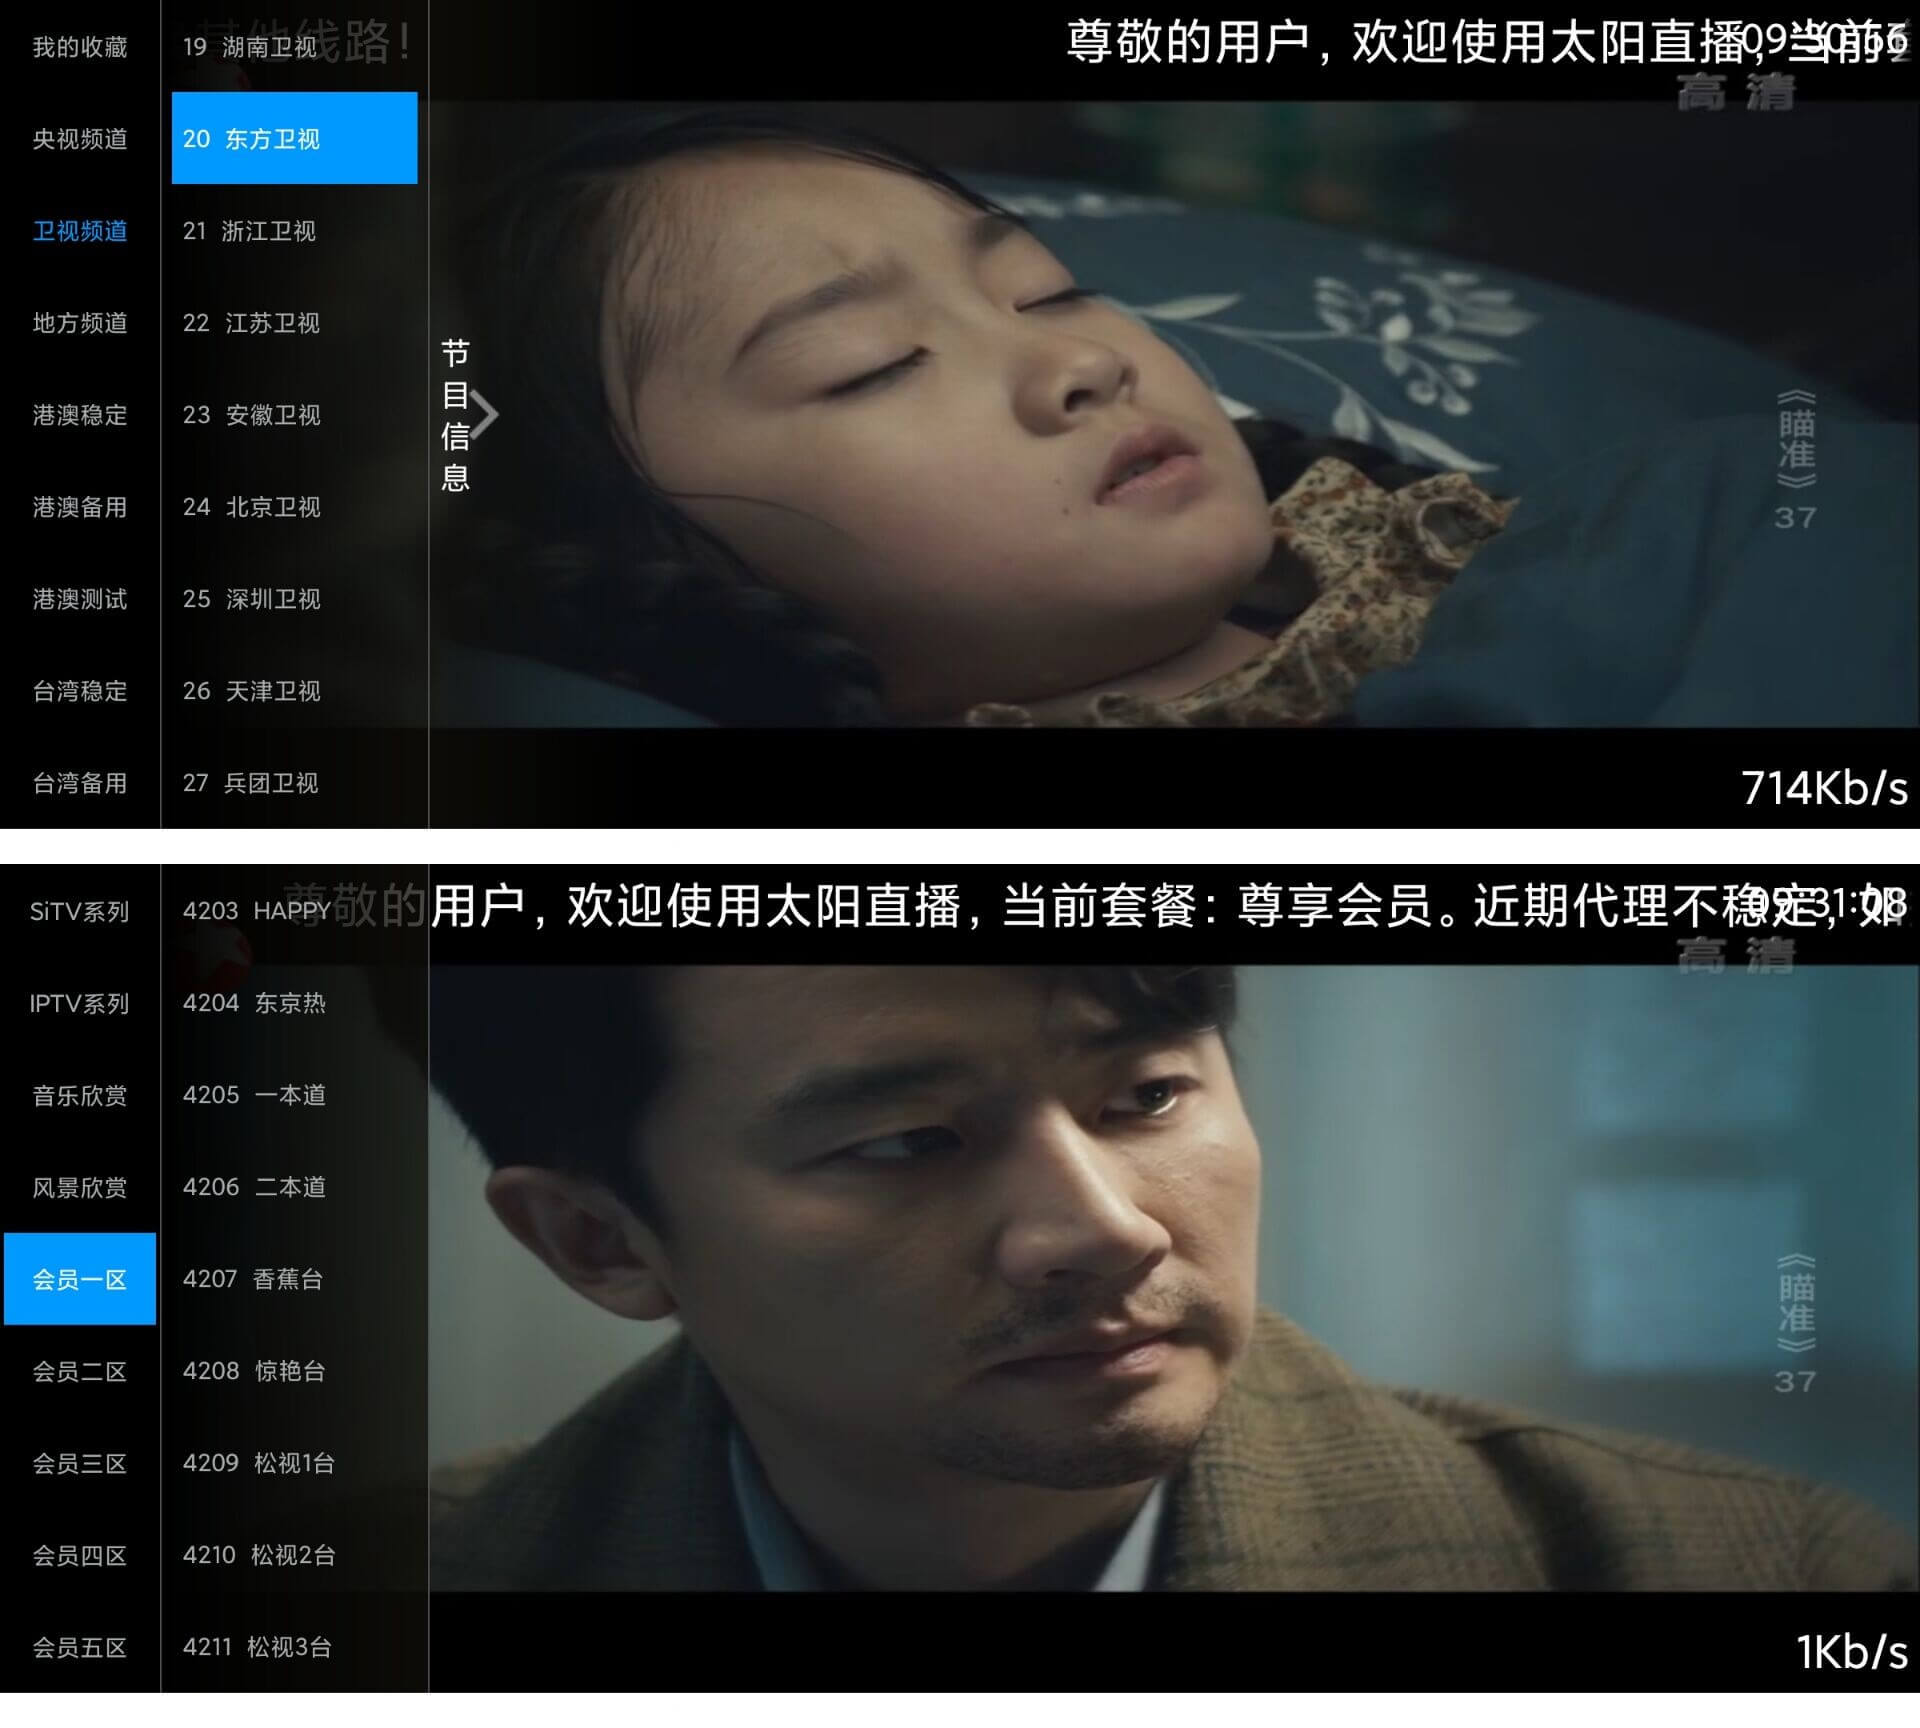 太阳直播 v2.9.8 中文高级版 内置国内外直播